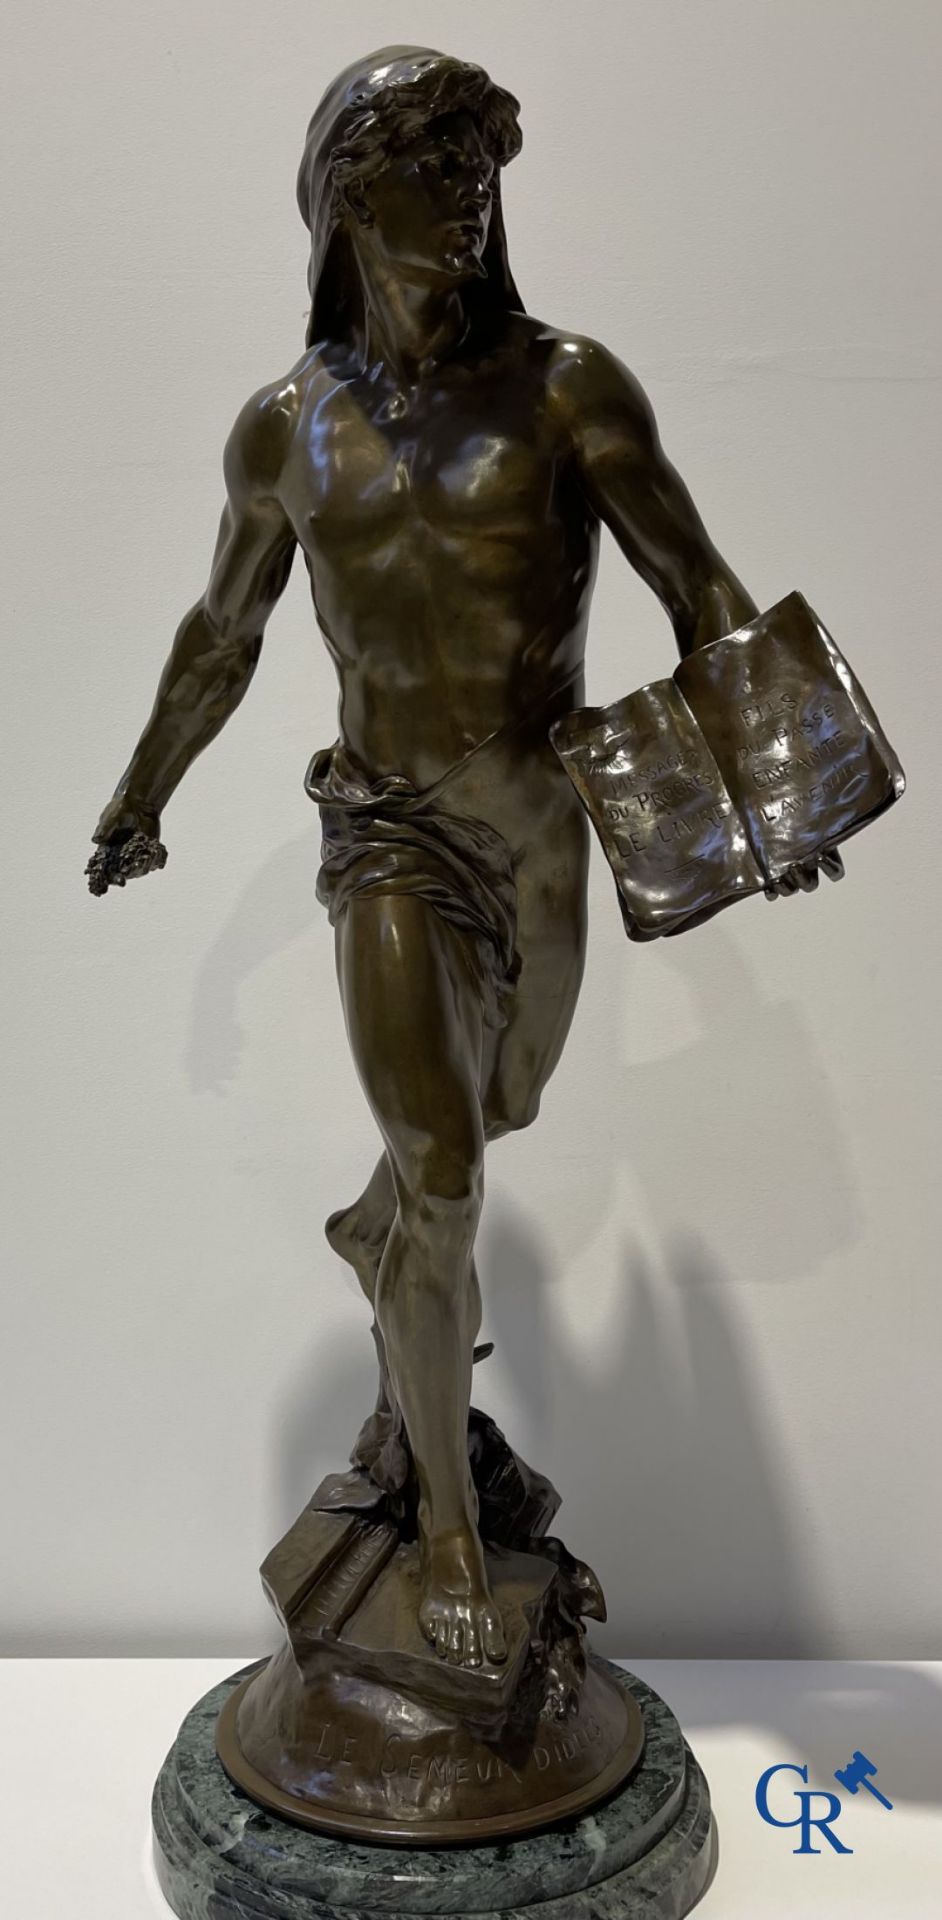 Emile Louis Picault (1833-1915) Large bronze statue "Le Semeur d'idées"
Foundry stamp Collin & Cie P - Bild 4 aus 16